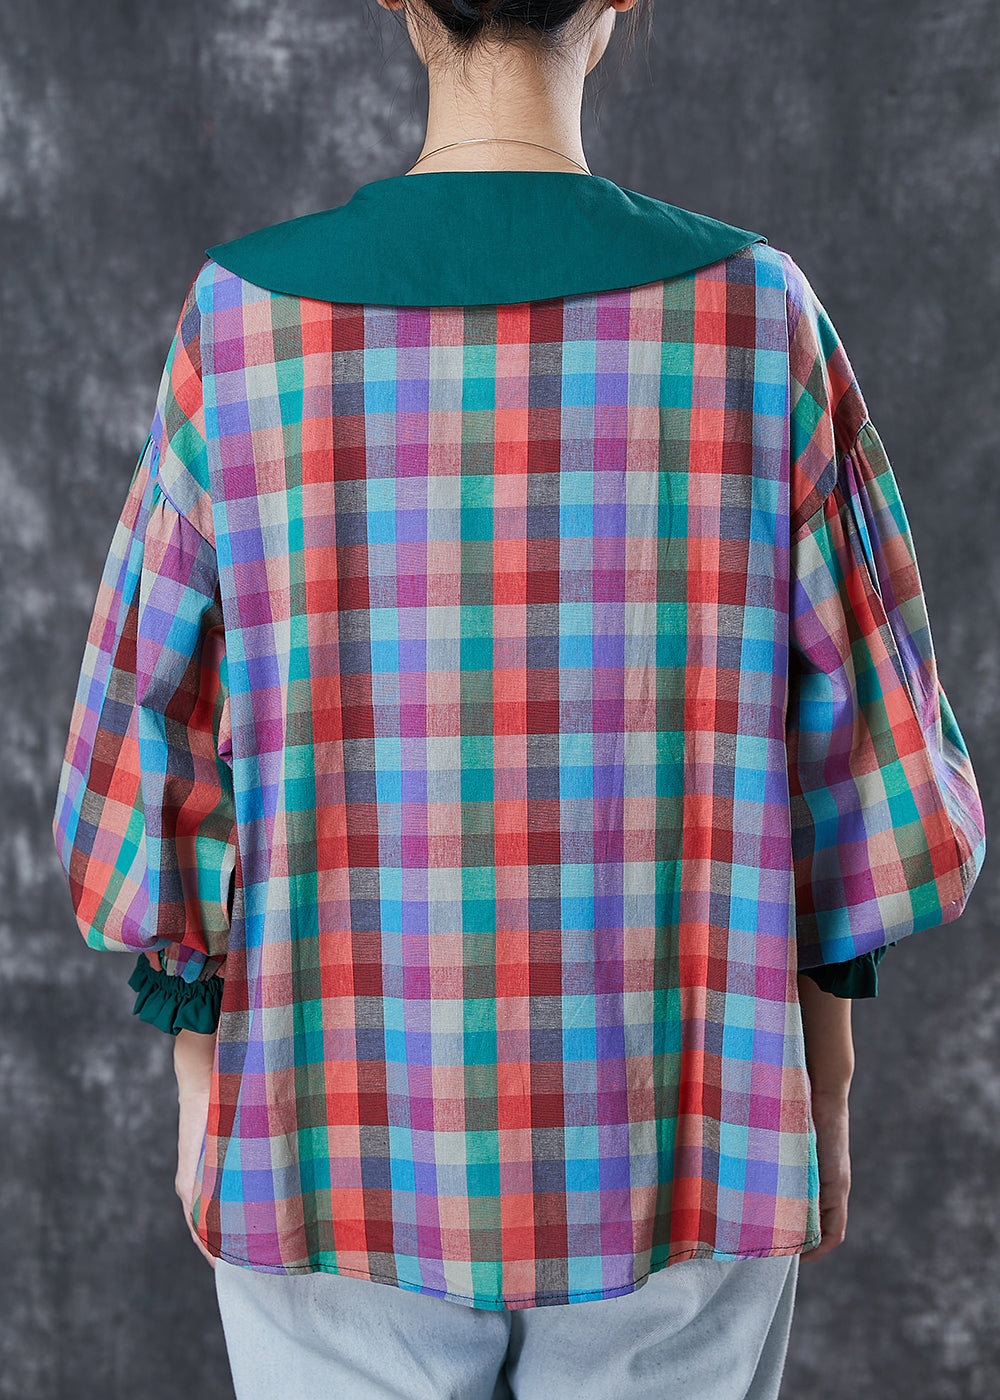 Italian Colorblock Peter Pan Collar Plaid Cotton Shirt Tops Spring